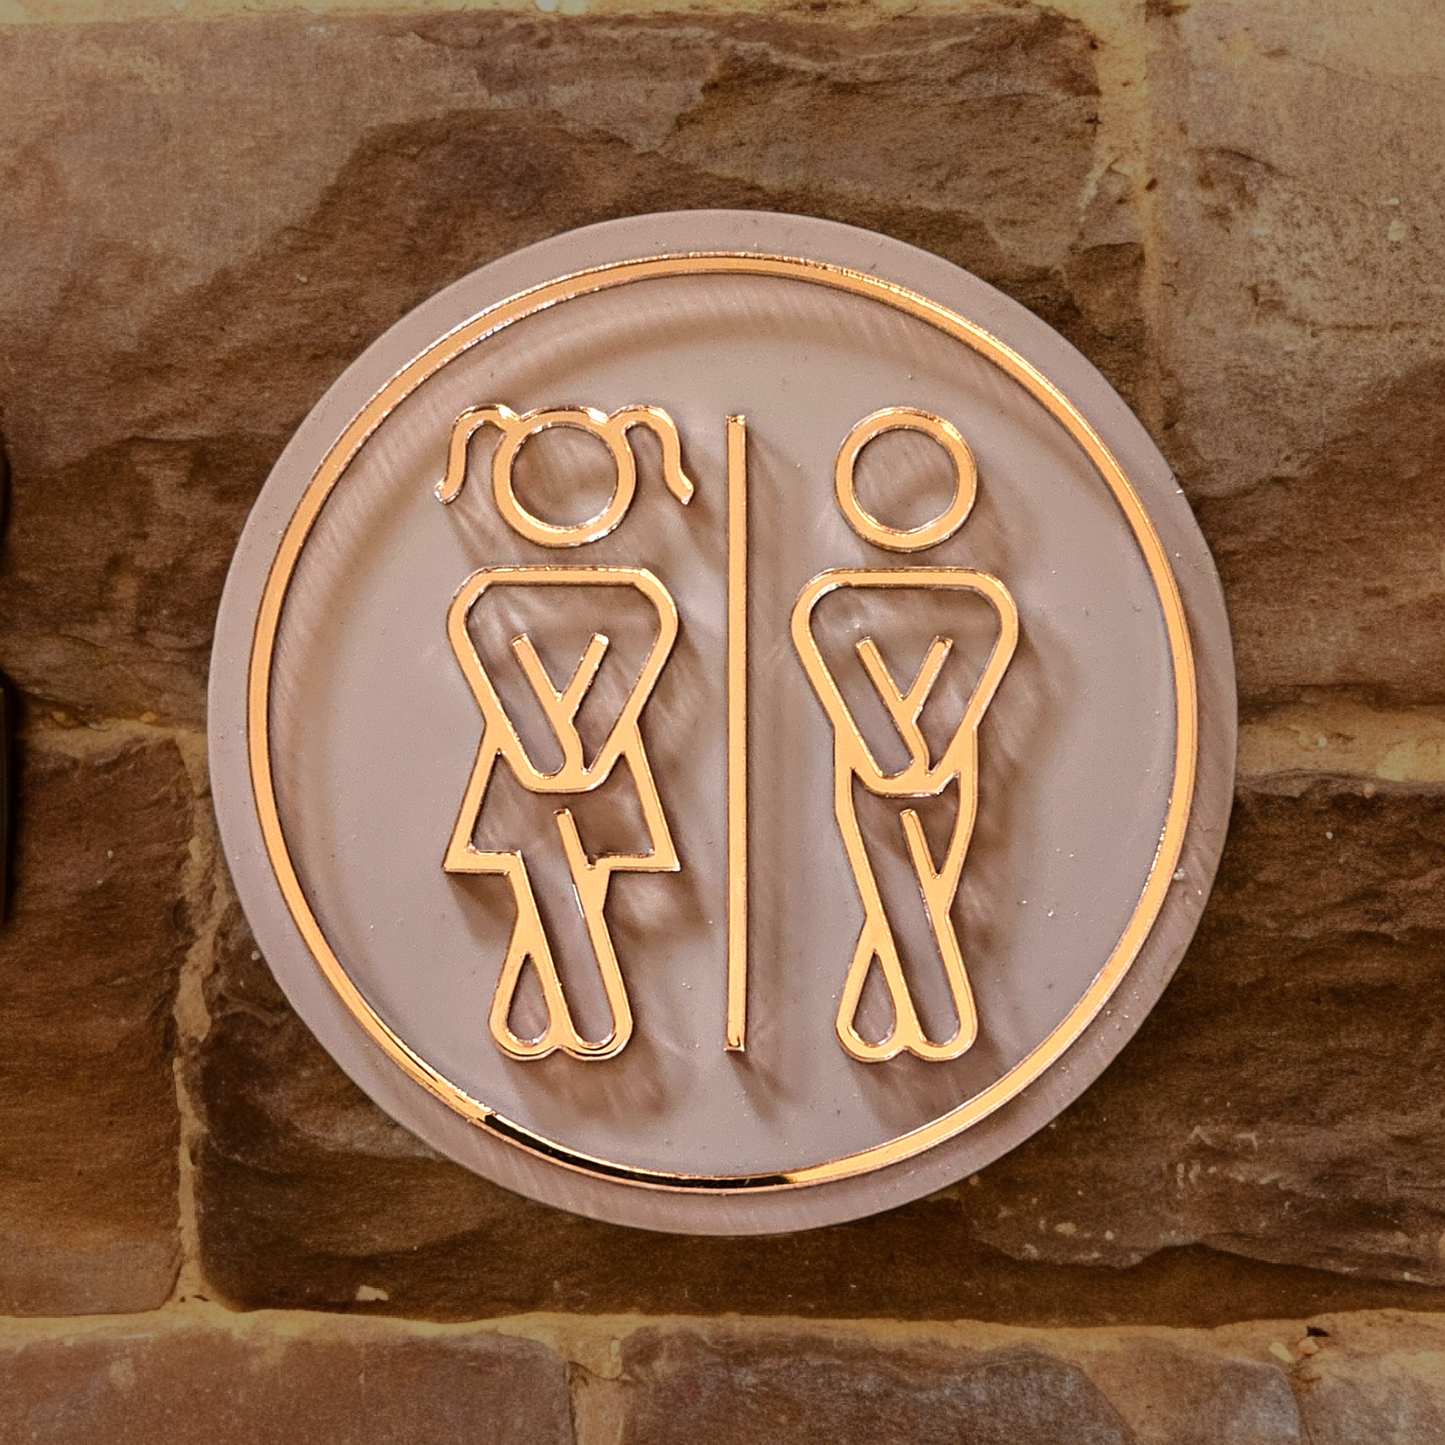 Toilet door sign